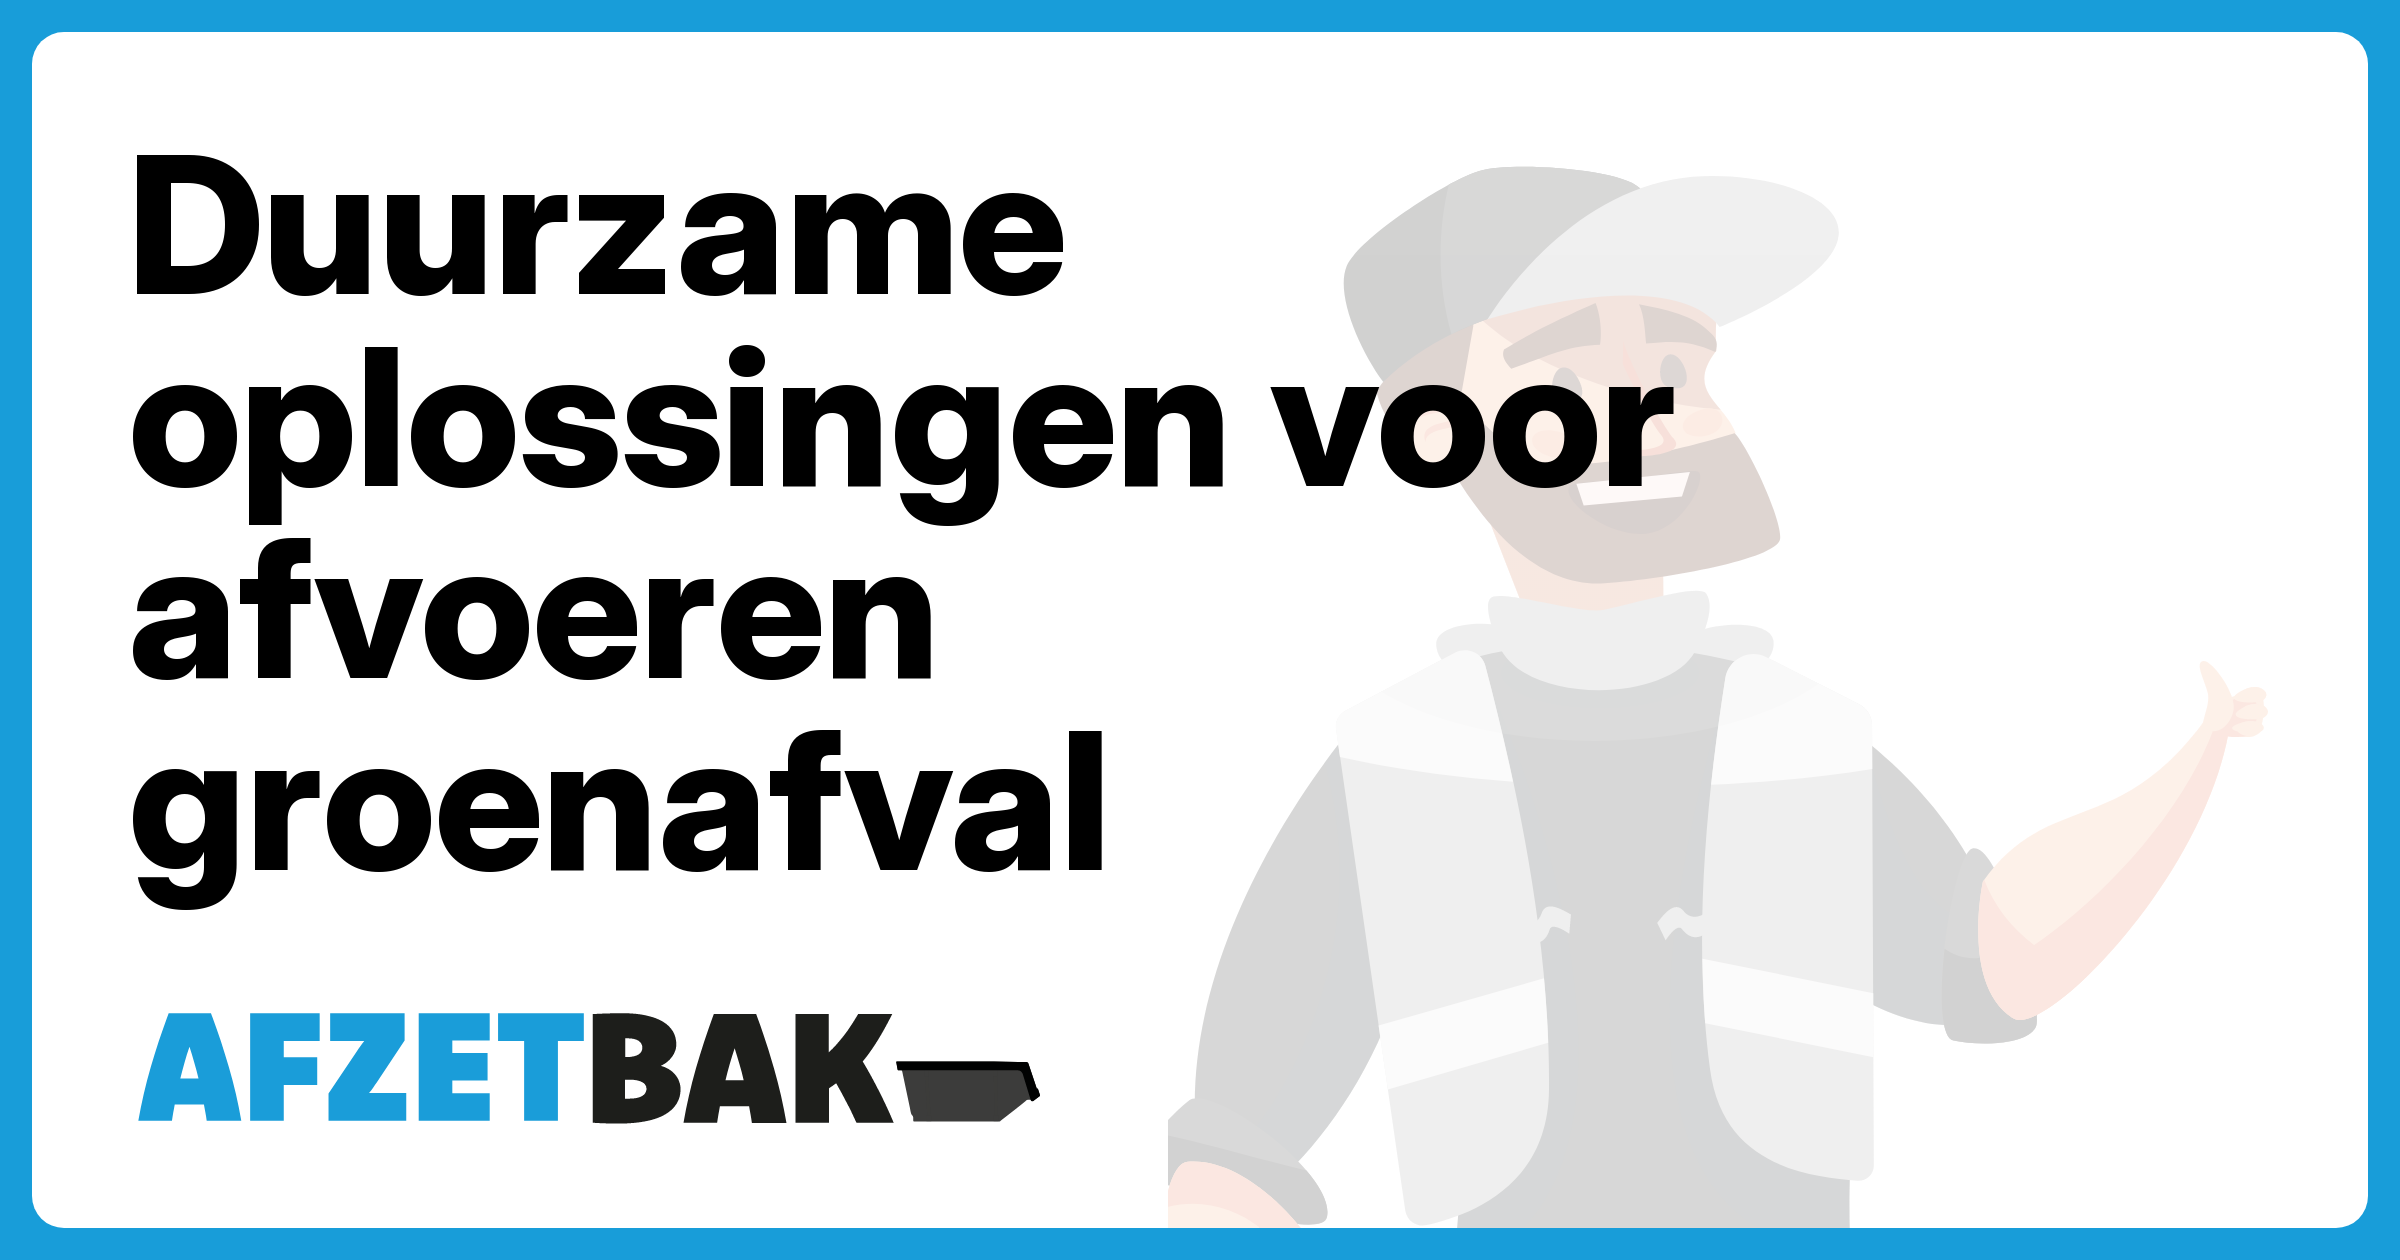 Duurzame oplossingen voor afvoeren groenafval - Afzetbak.nl